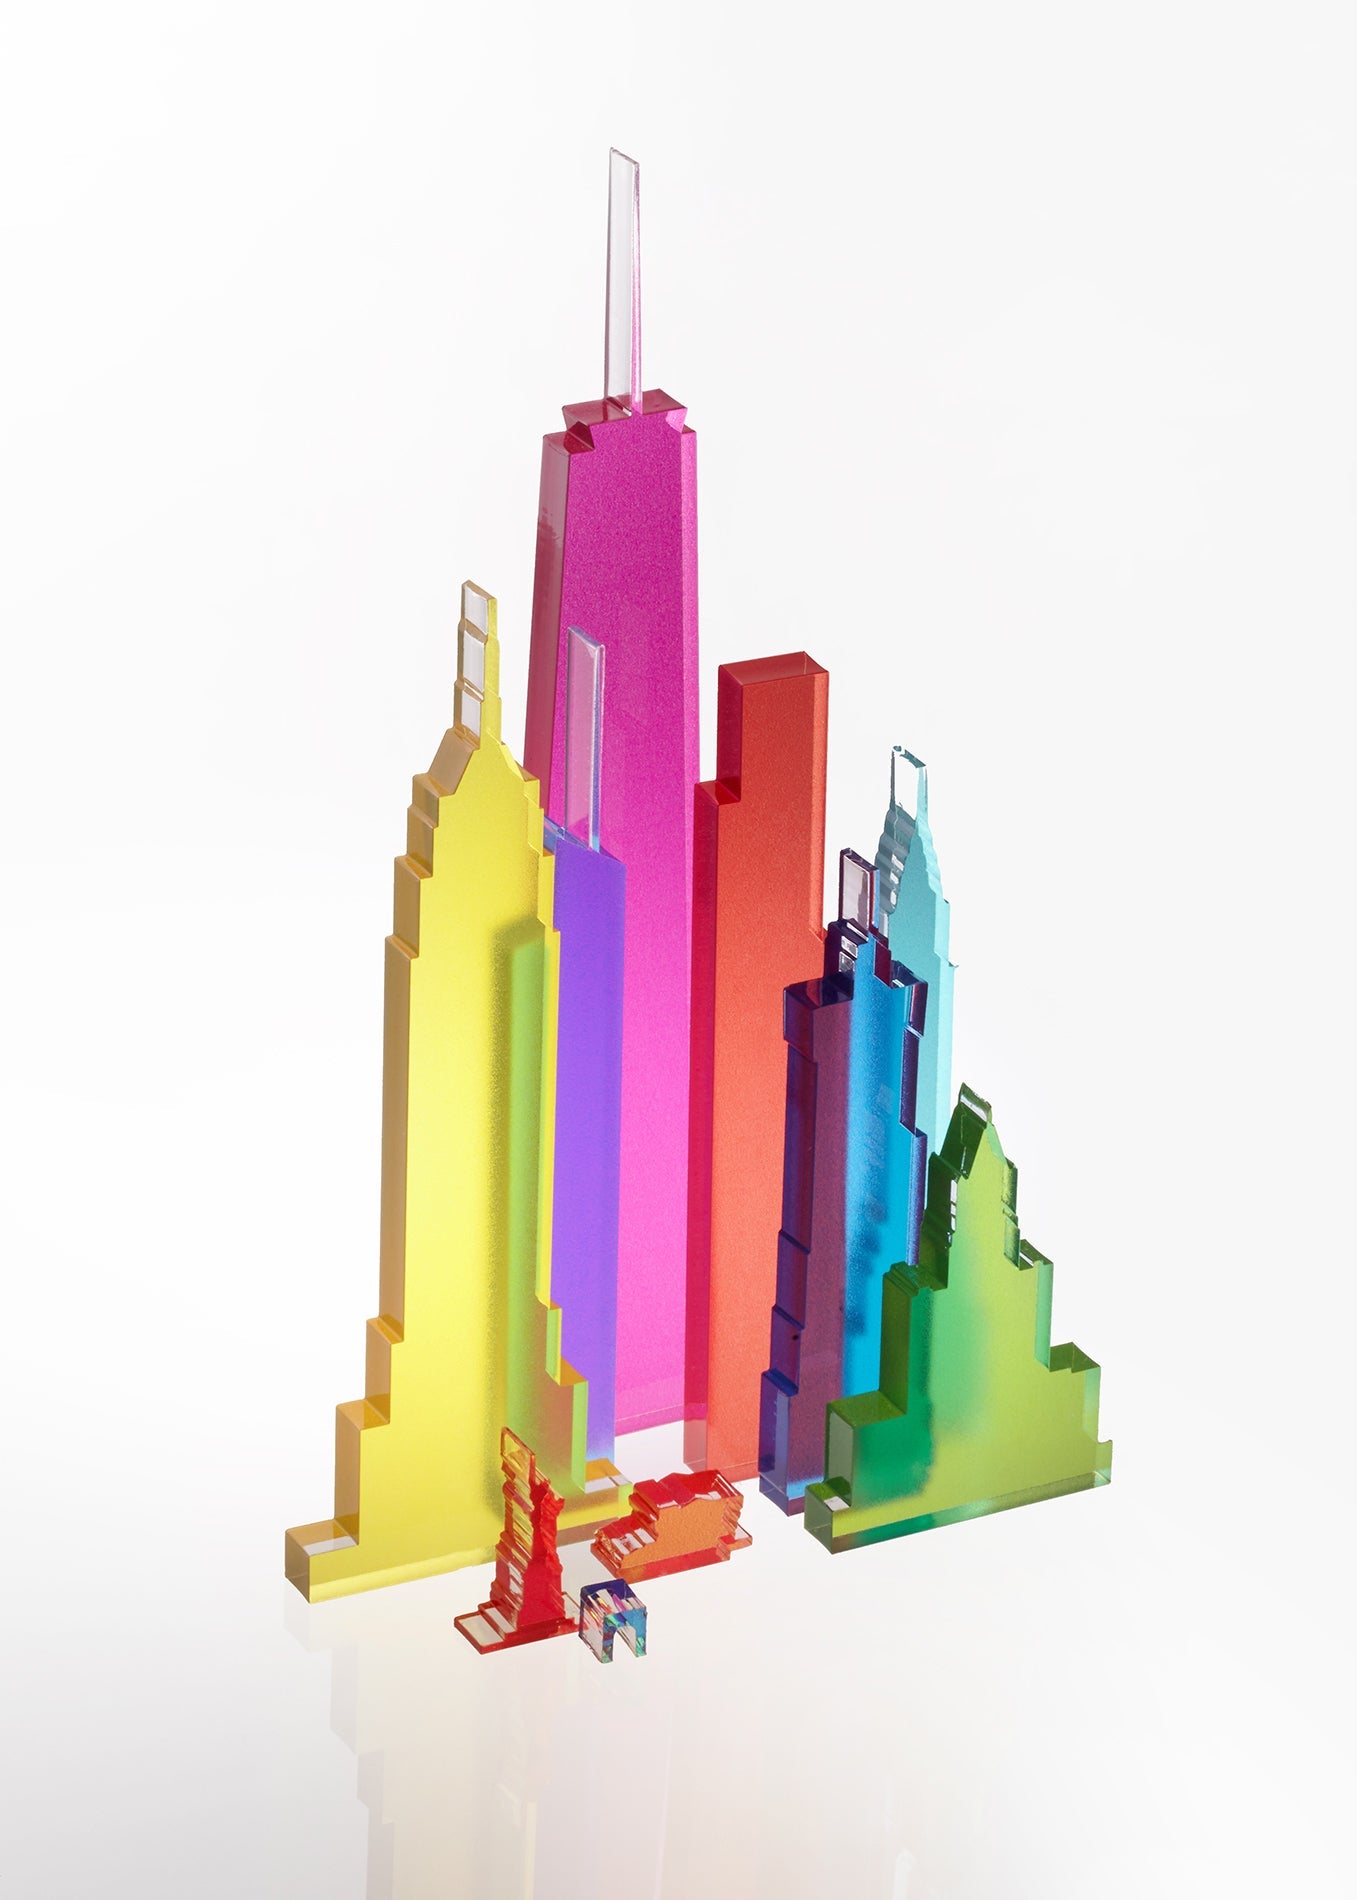 New modular NYC light sculpture